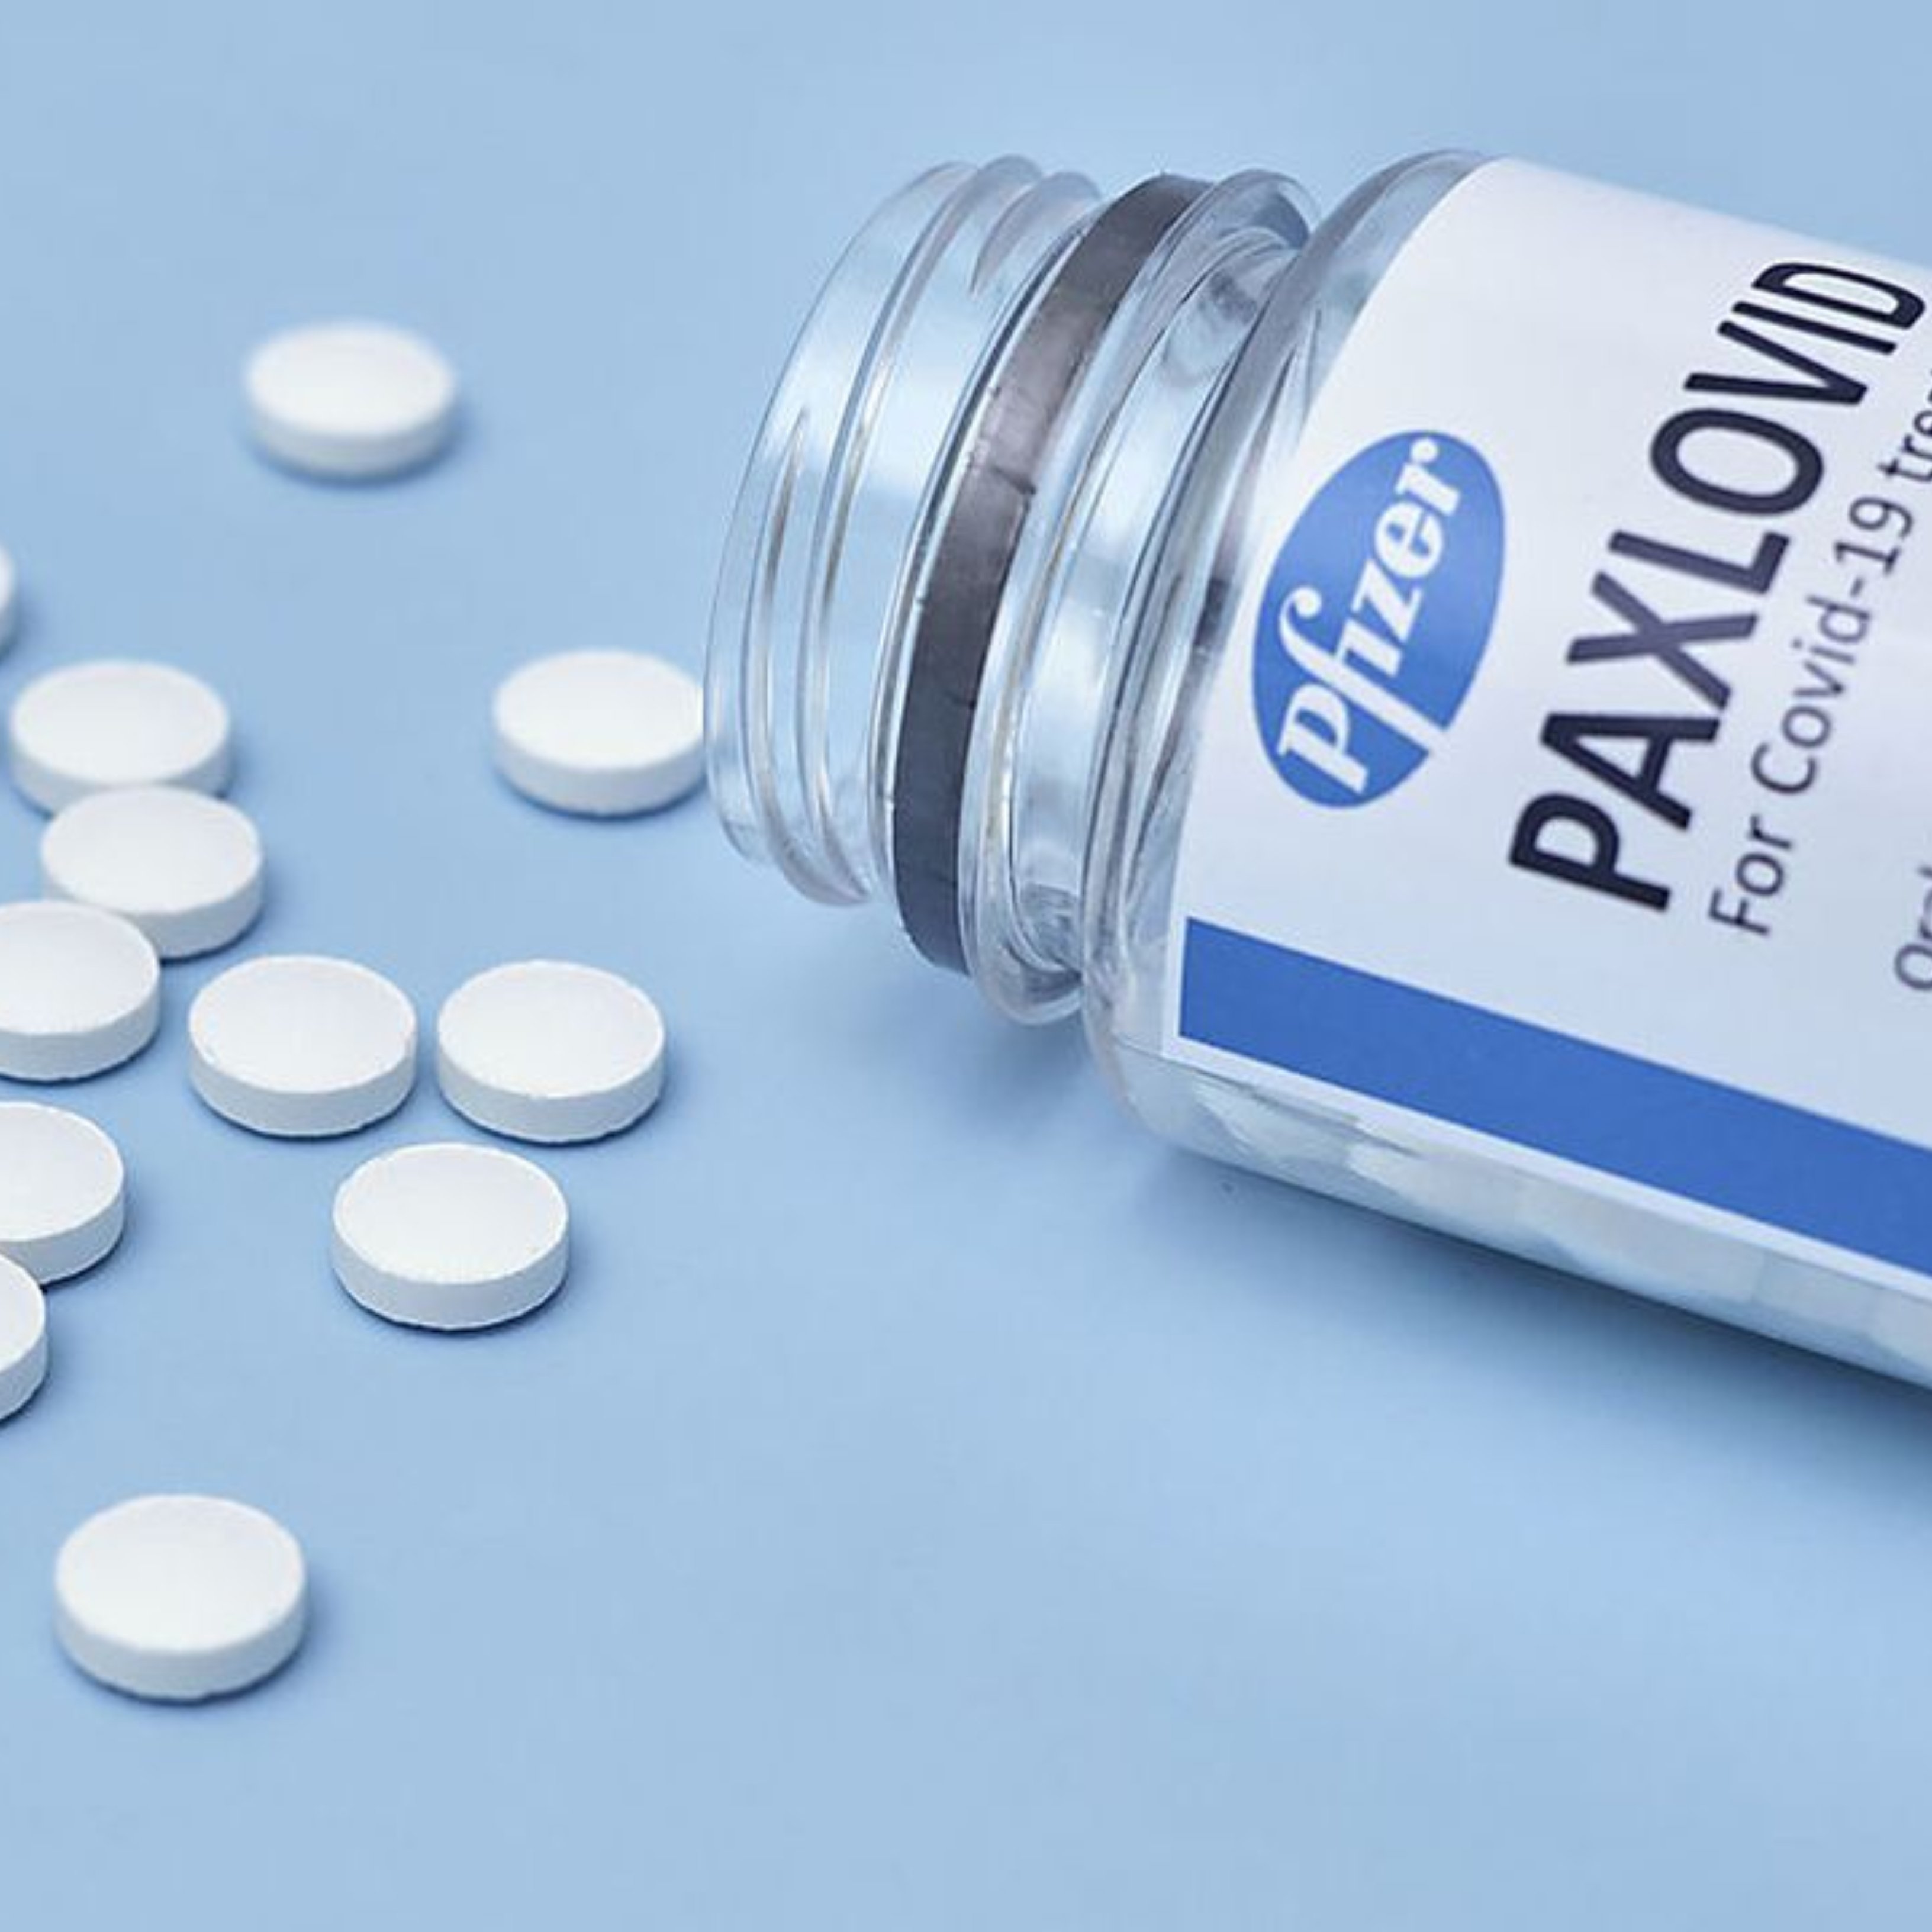 Las claves de Paxlovid, el primer antiviral oral contra la covid-19